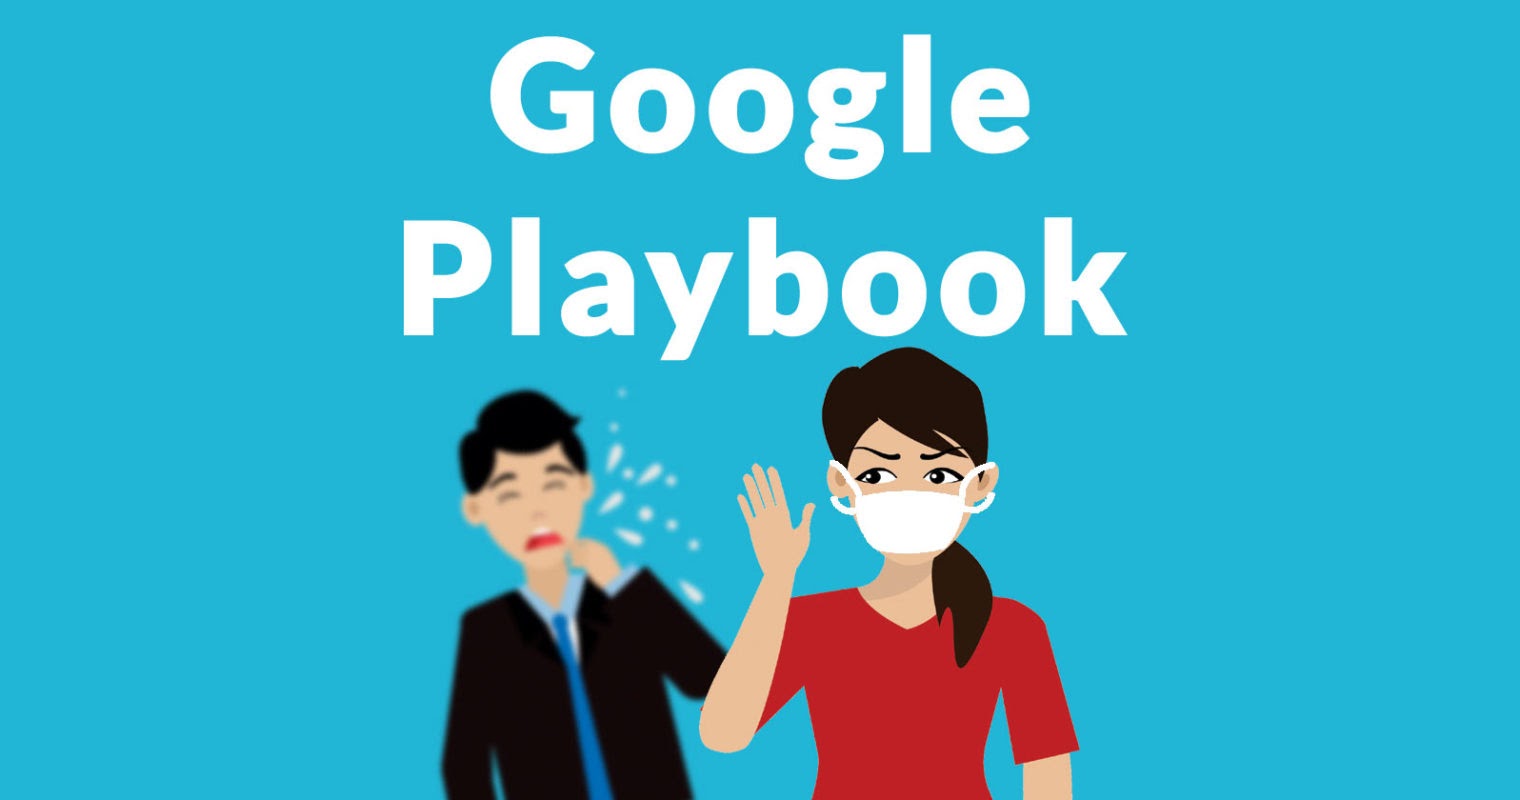 Google Playbook giới thiệu sách mới 2021: Chiến lược Marketing trong mùa dịch